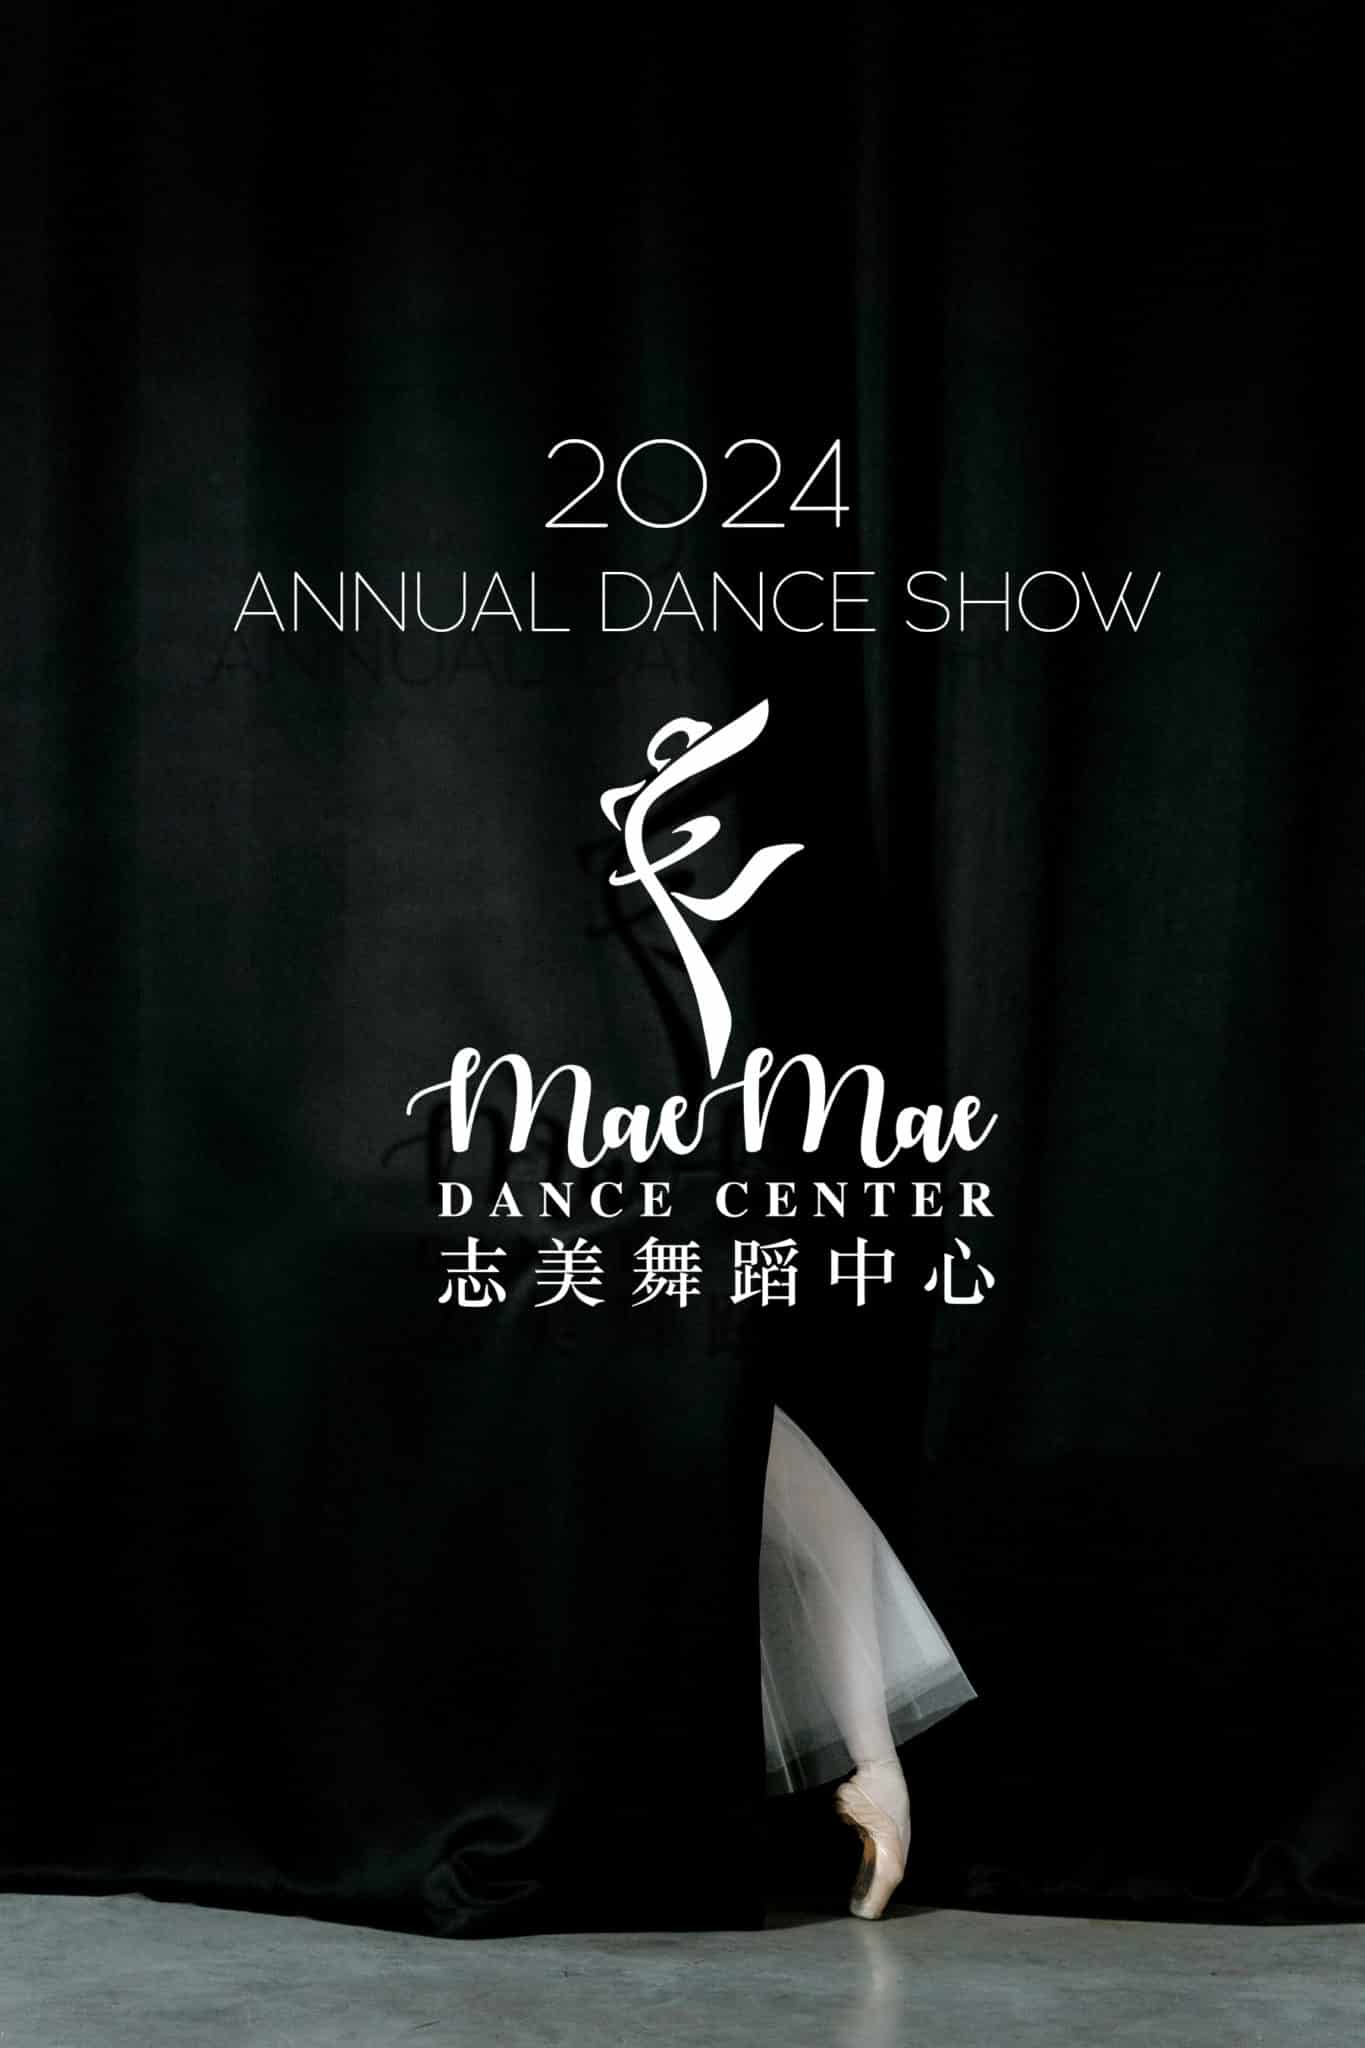 2024 Annual Dance Show by Mae Mae Dance Center